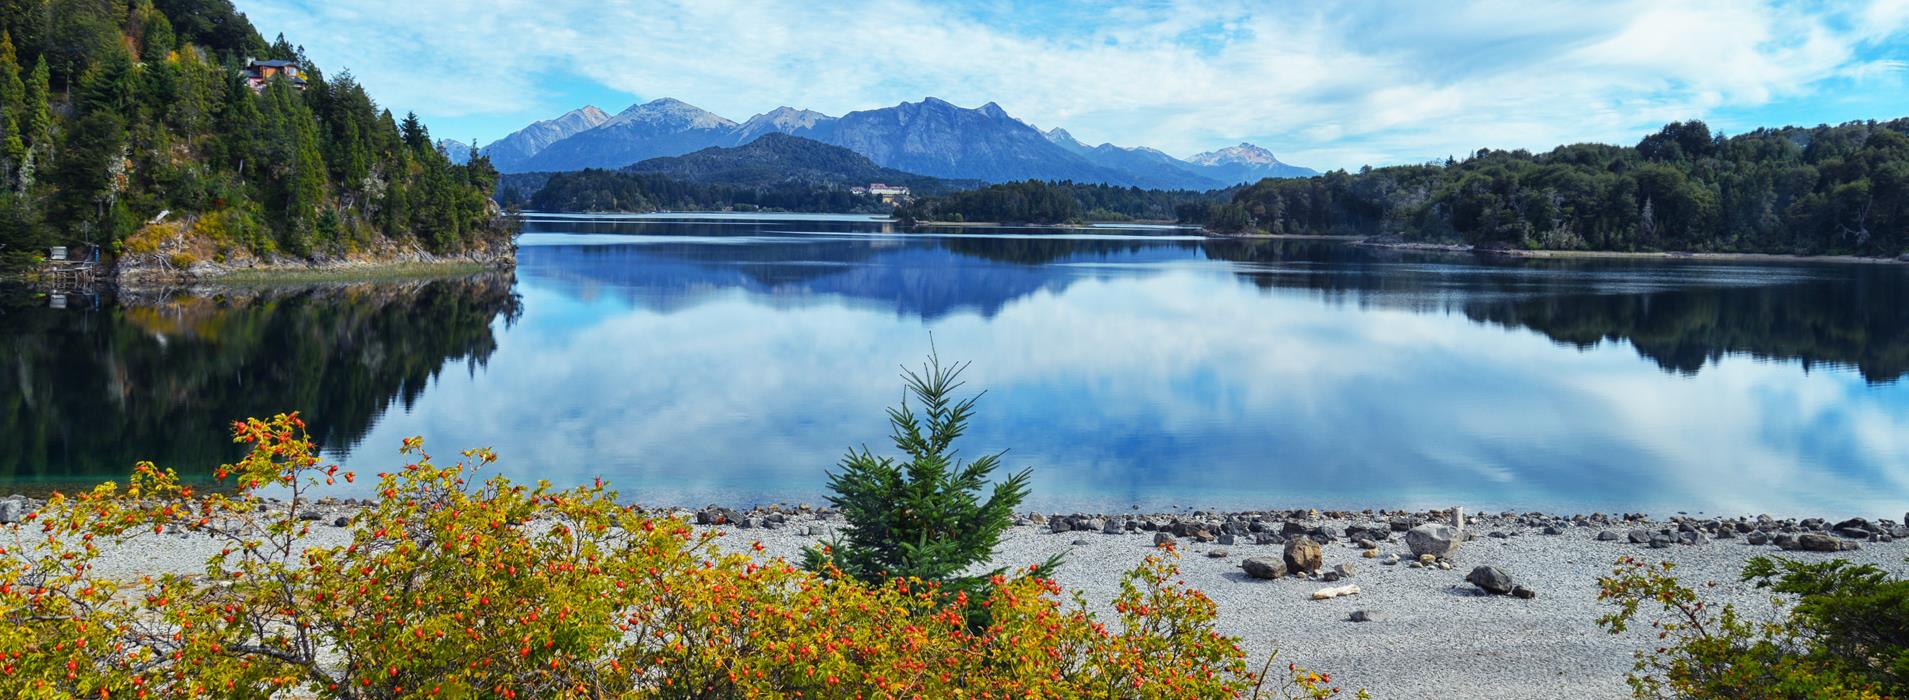 Фотокартина Панорама озера Перито Морено